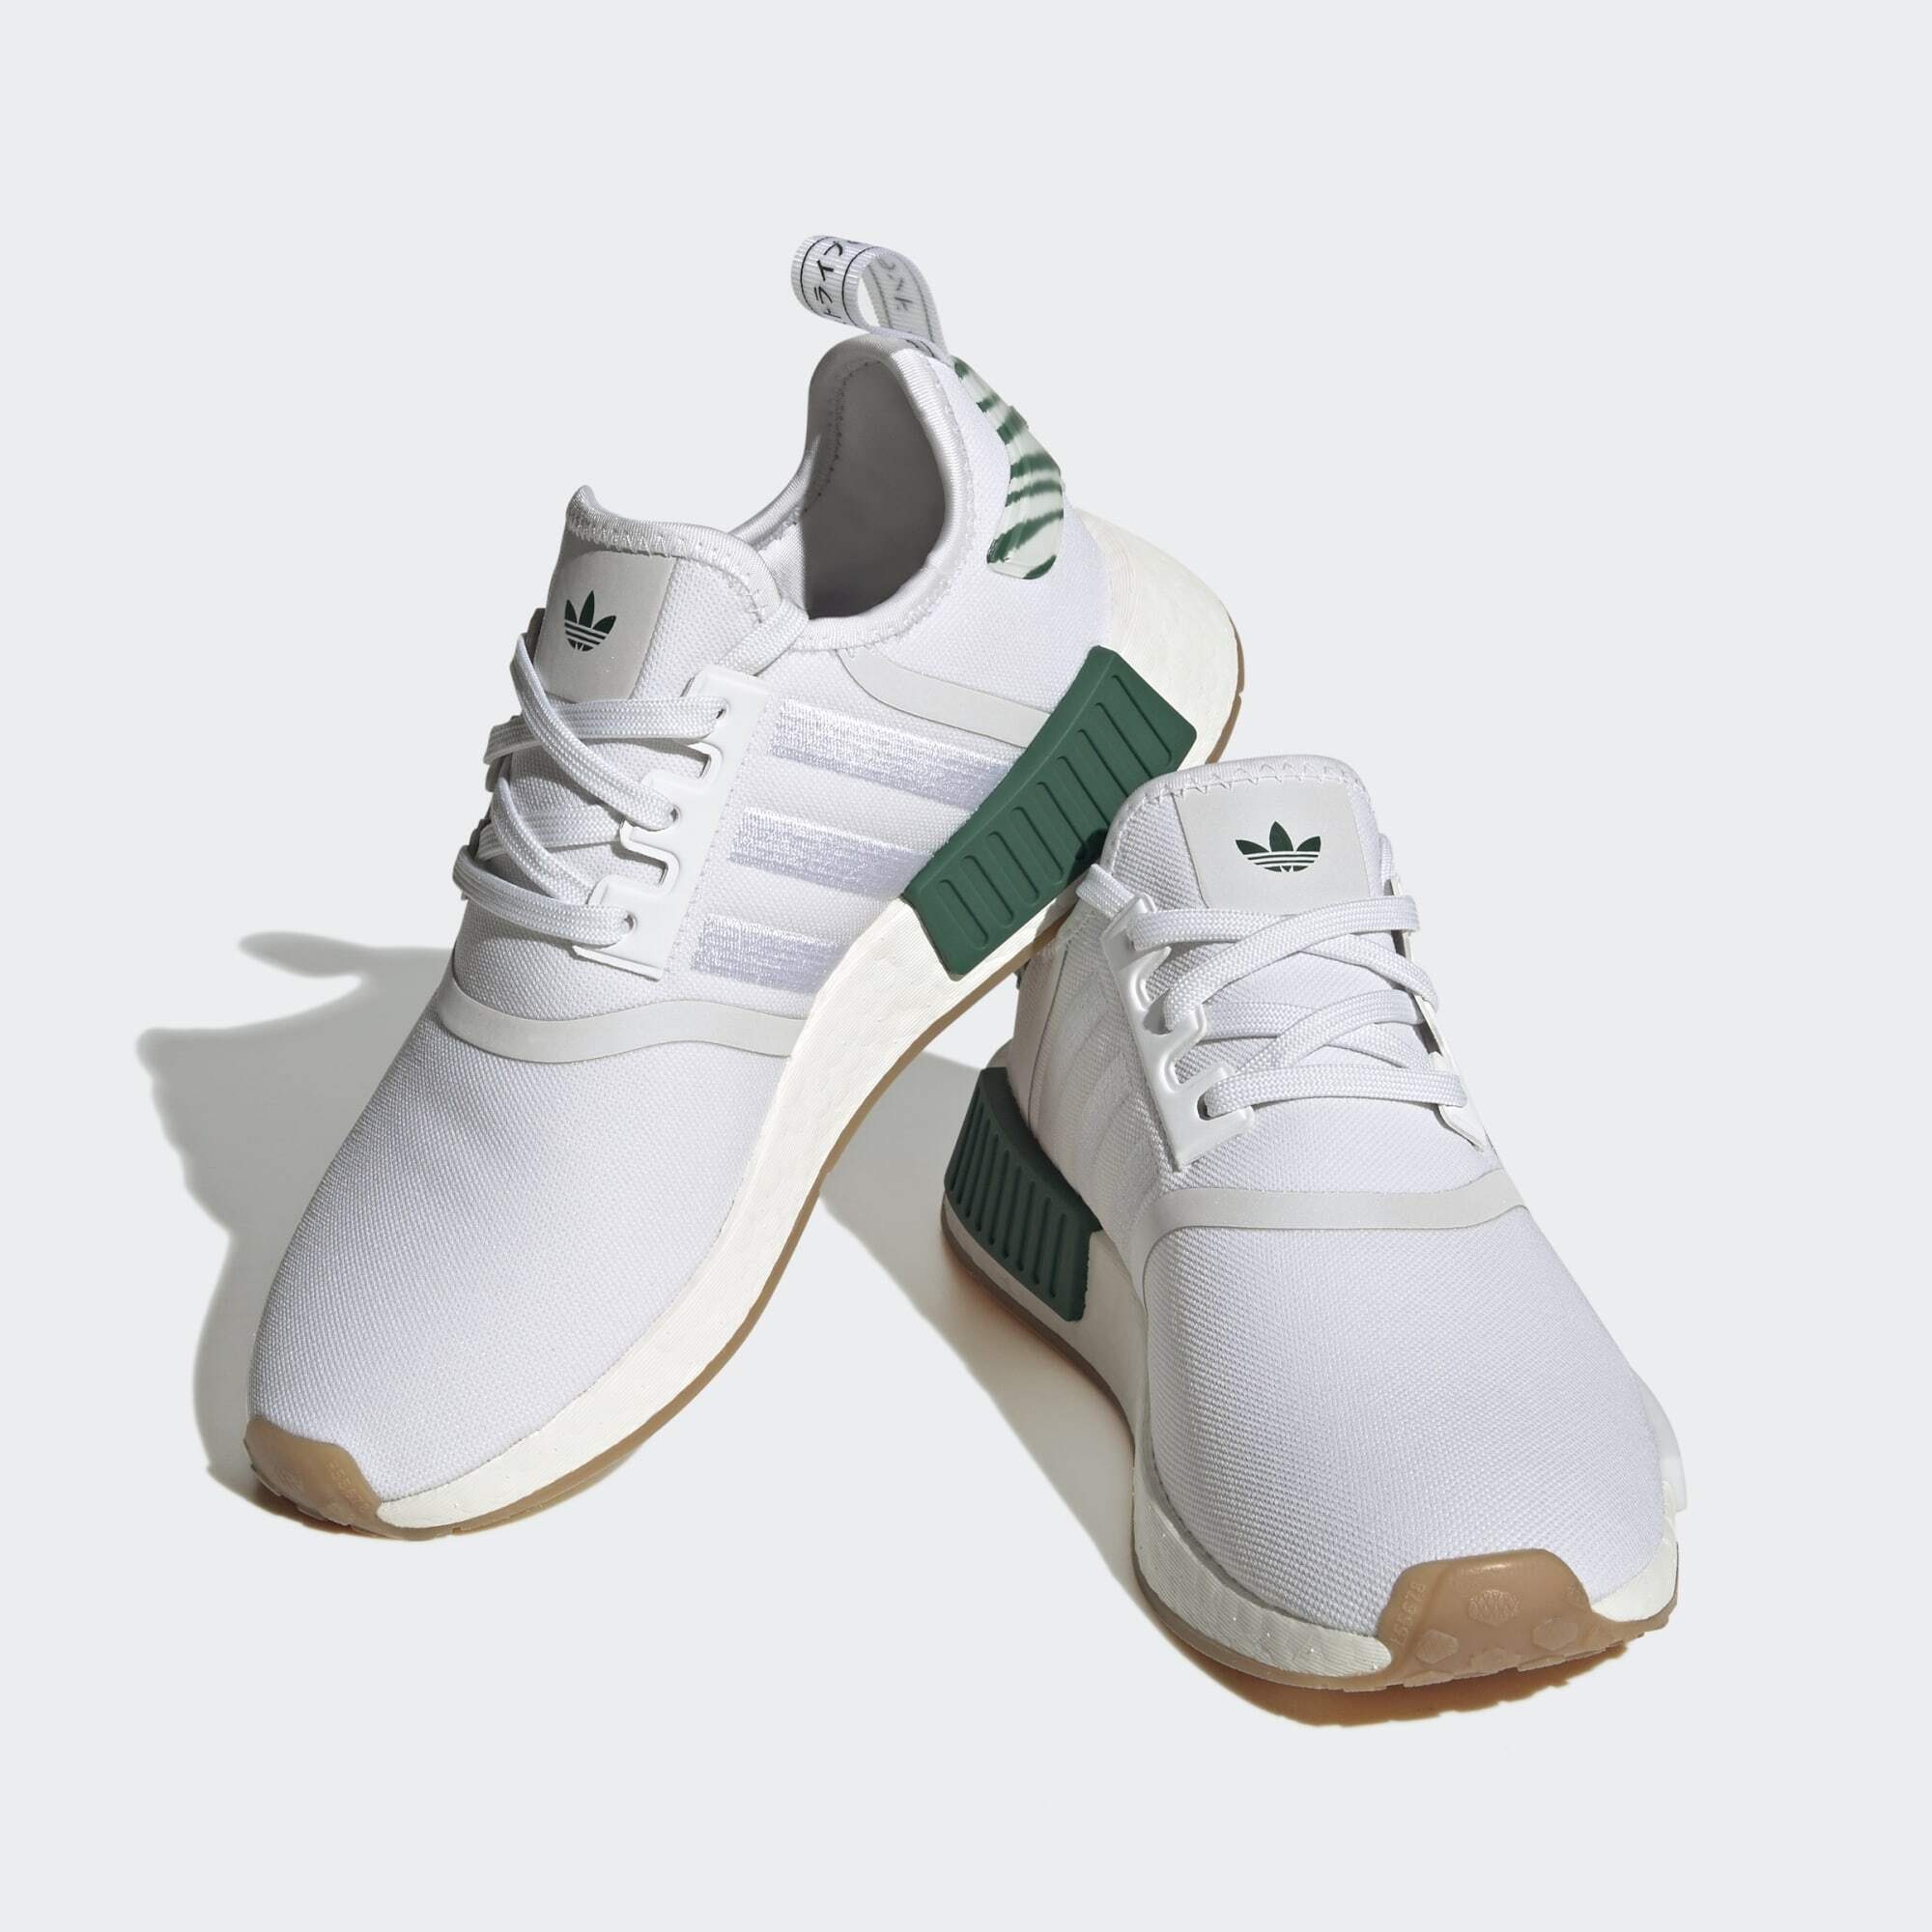 NMD_R1 SCHUH Originals adidas Sneaker